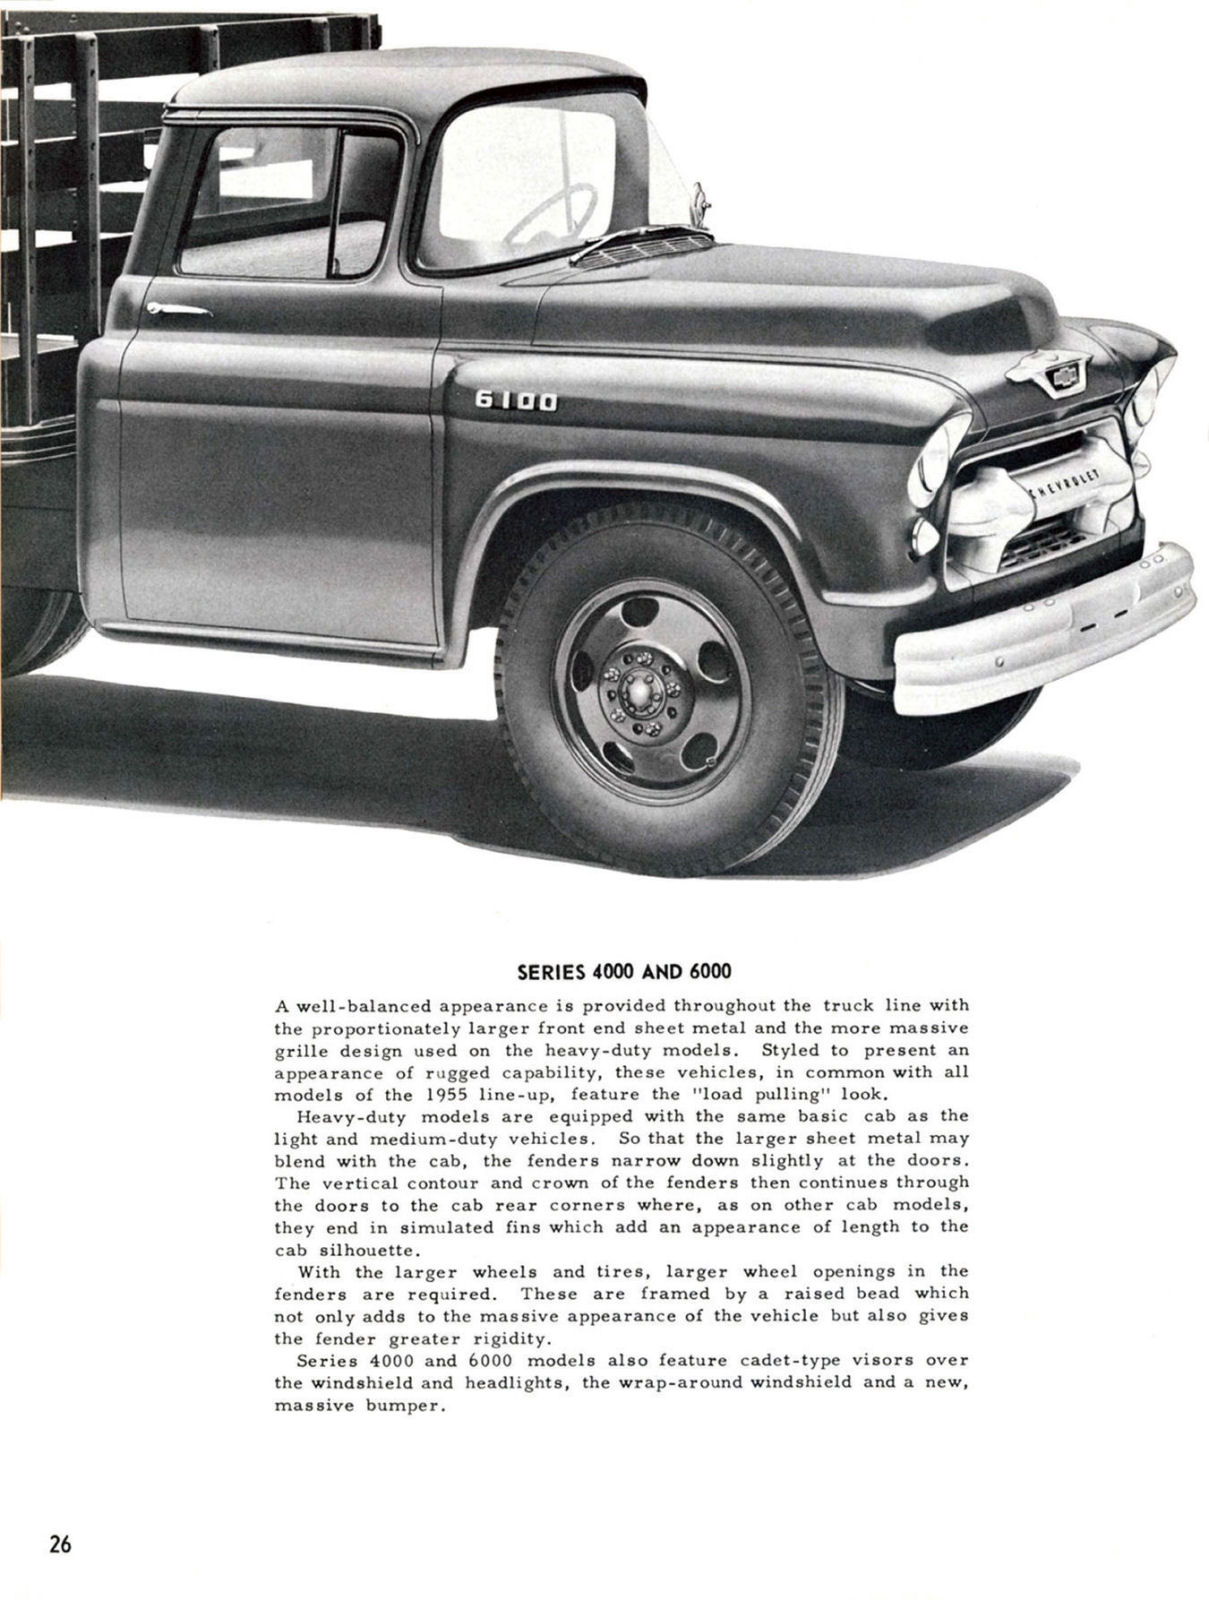 1955_Chevrolet_Truck_Engineering_Features-026